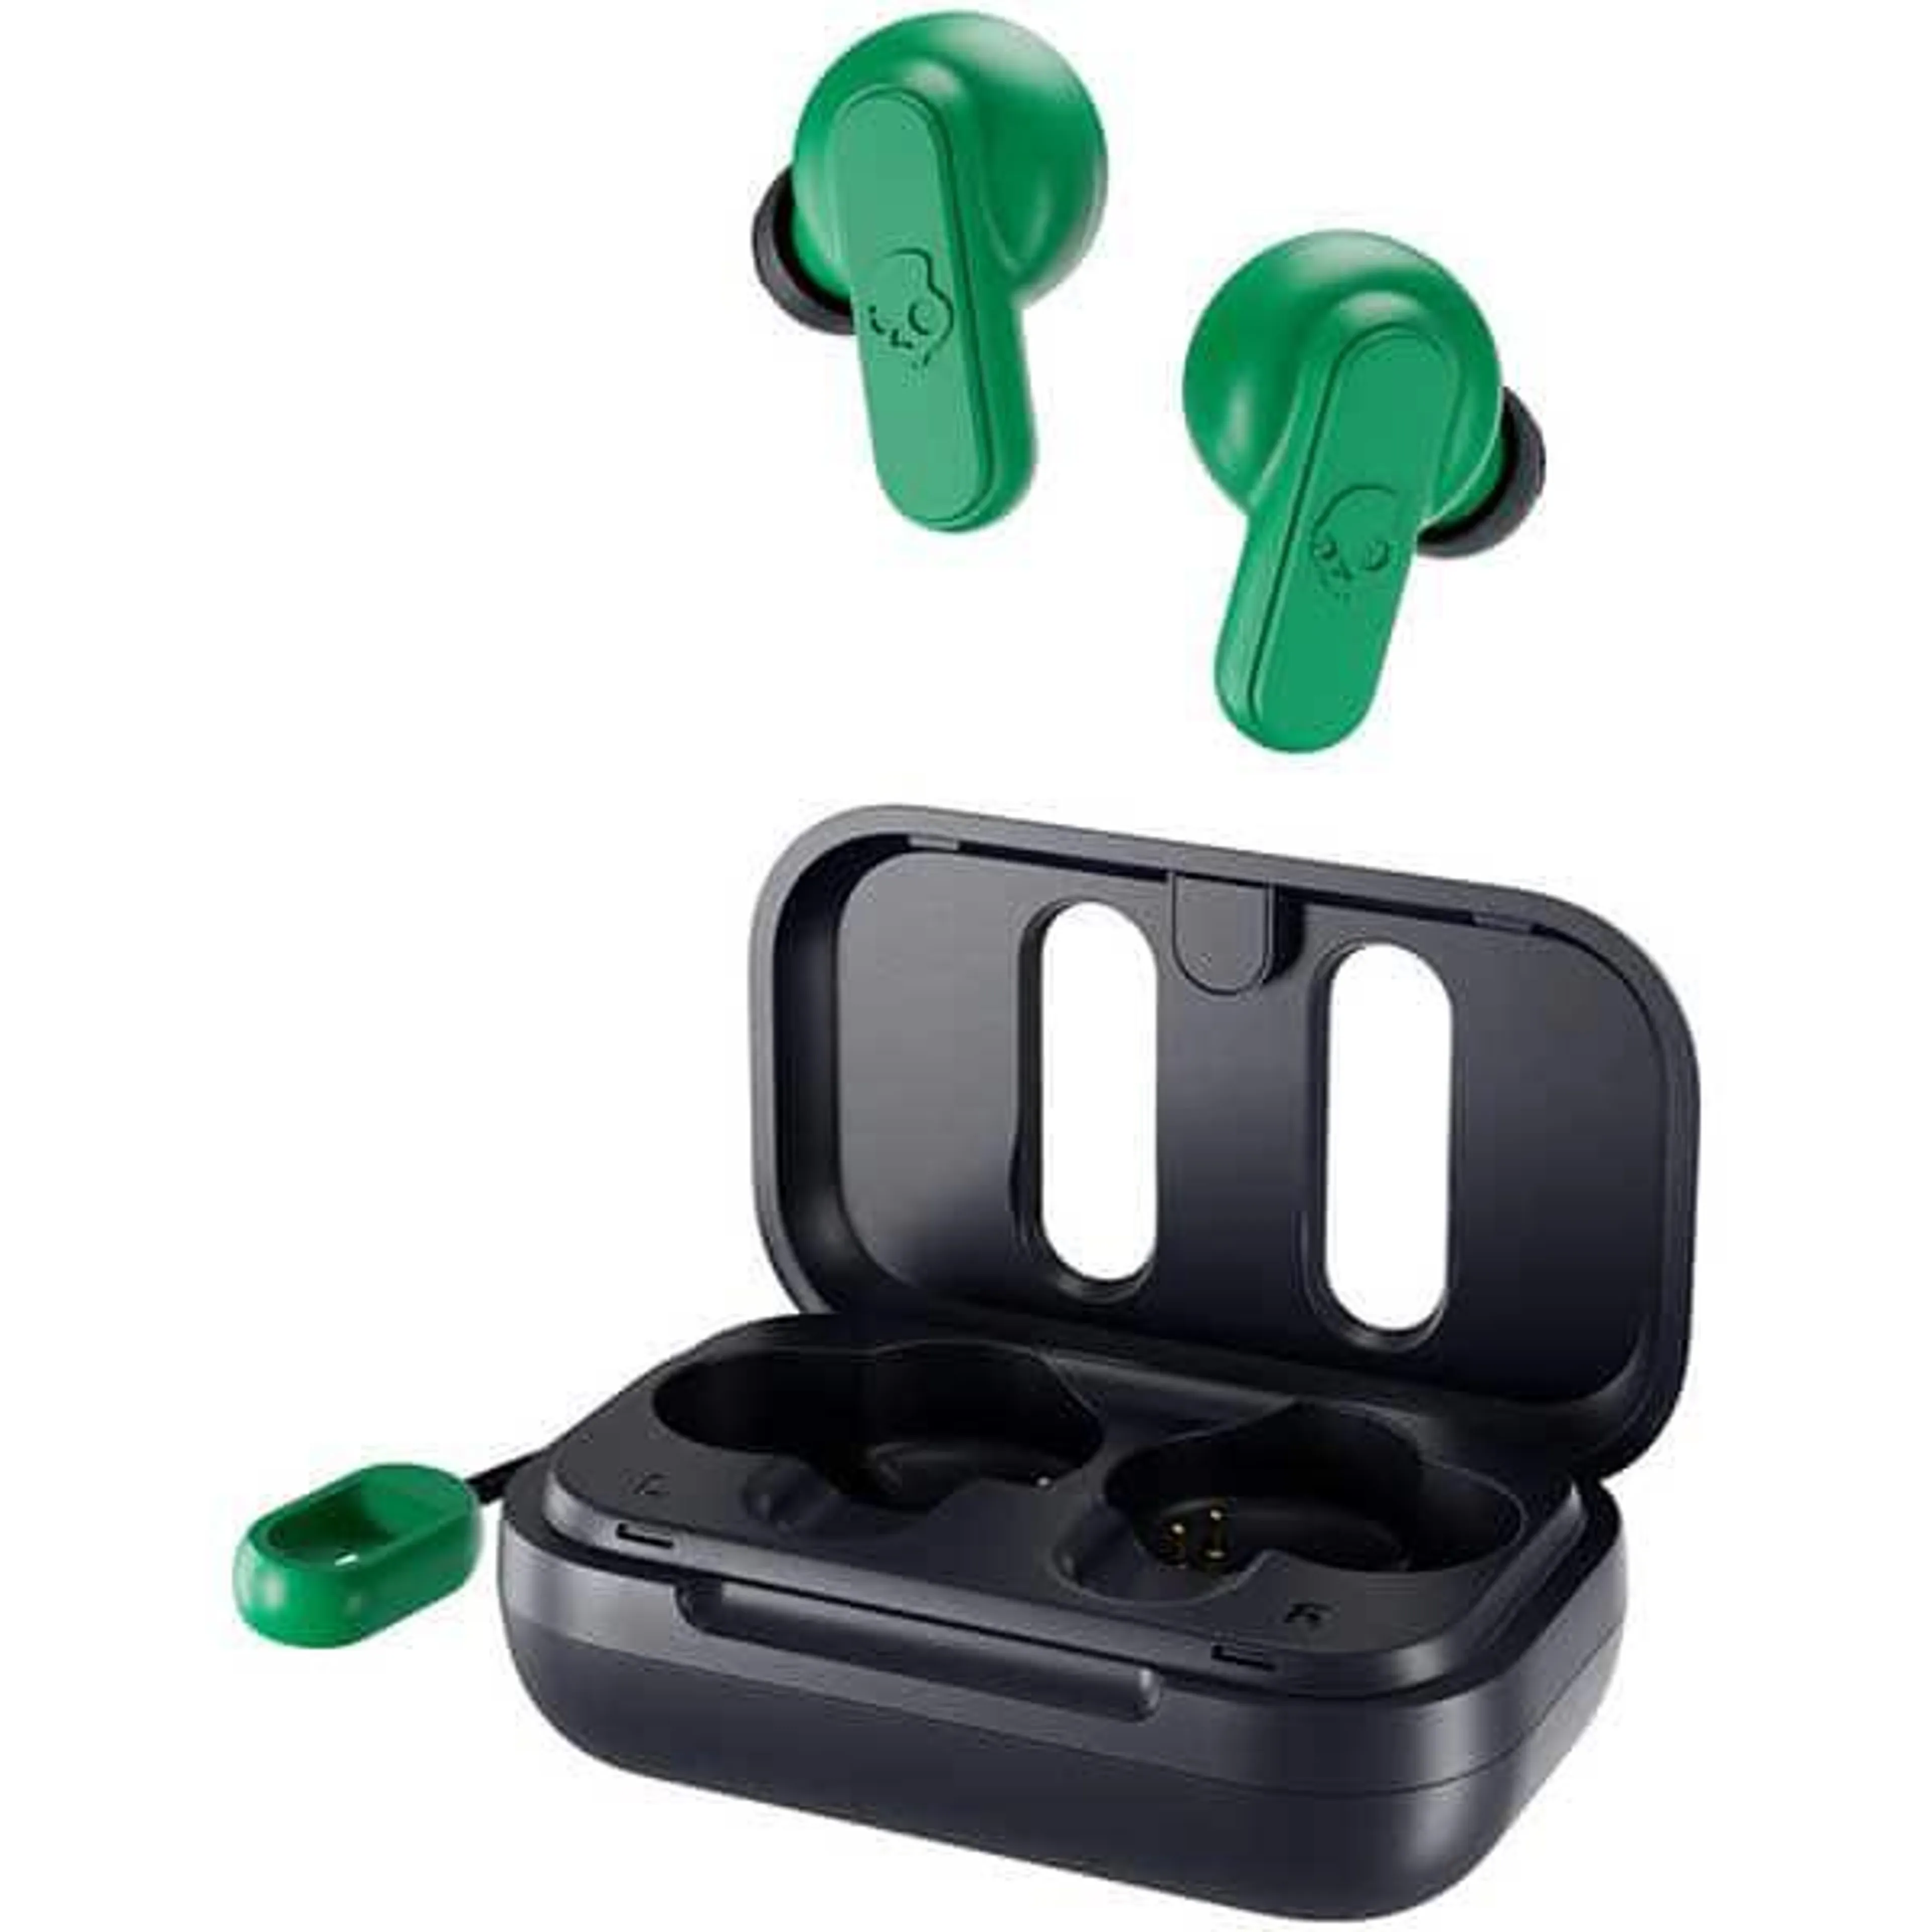 Casti SKULLCANDY Dime S2DMW-P750, True Wireless Bluetooth, In-Ear, Microfon, Dark Blue/Green